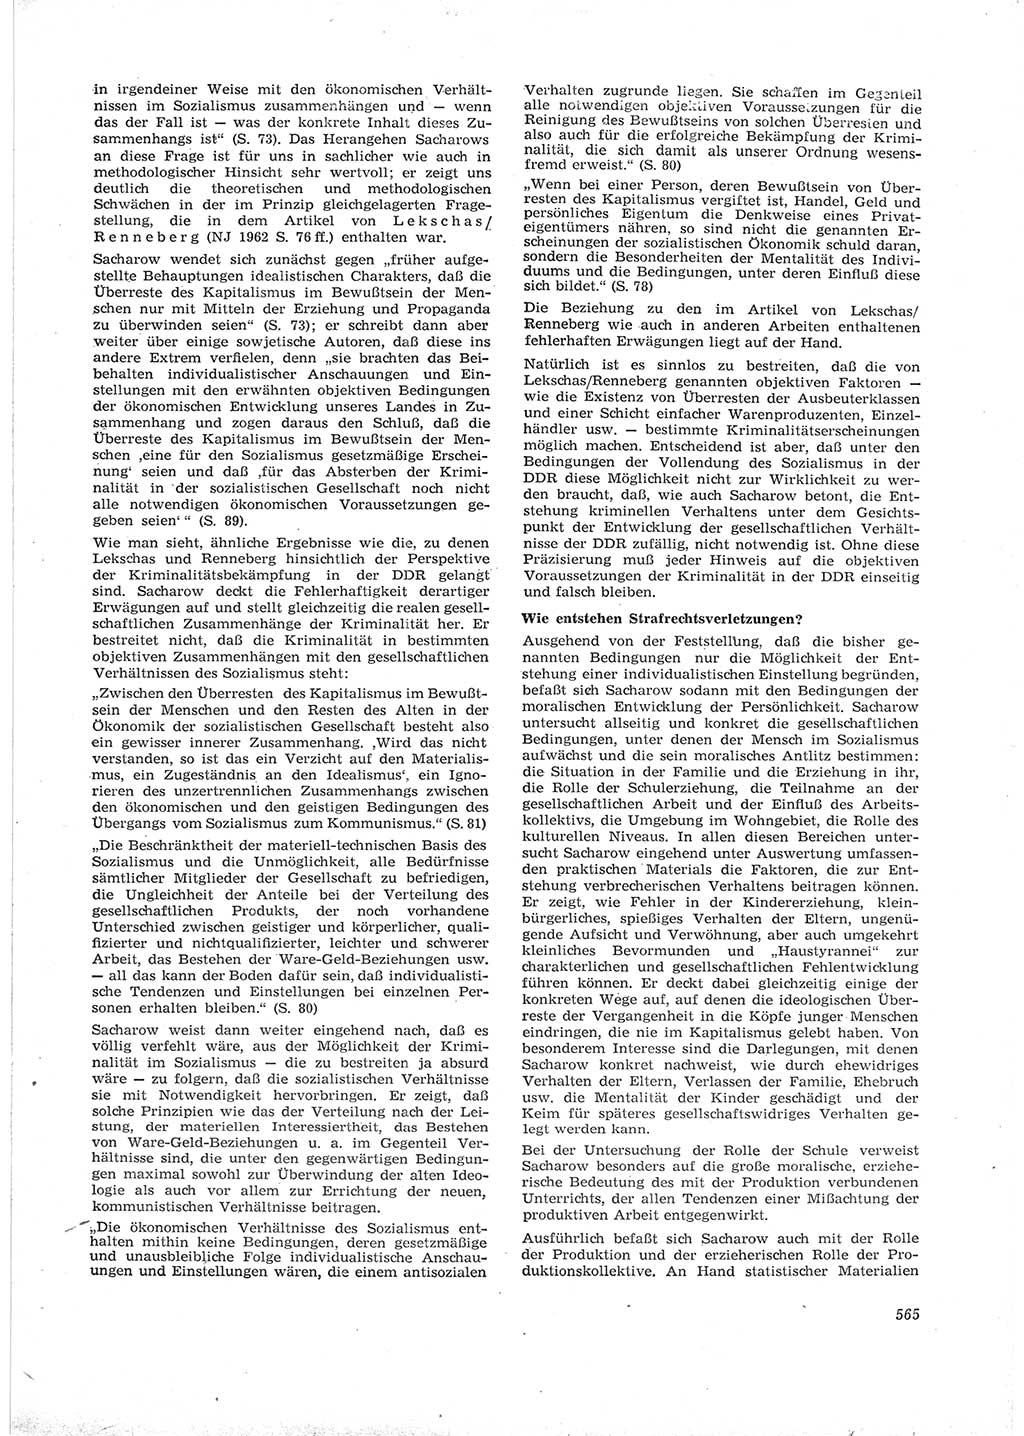 Neue Justiz (NJ), Zeitschrift für Recht und Rechtswissenschaft [Deutsche Demokratische Republik (DDR)], 16. Jahrgang 1962, Seite 565 (NJ DDR 1962, S. 565)